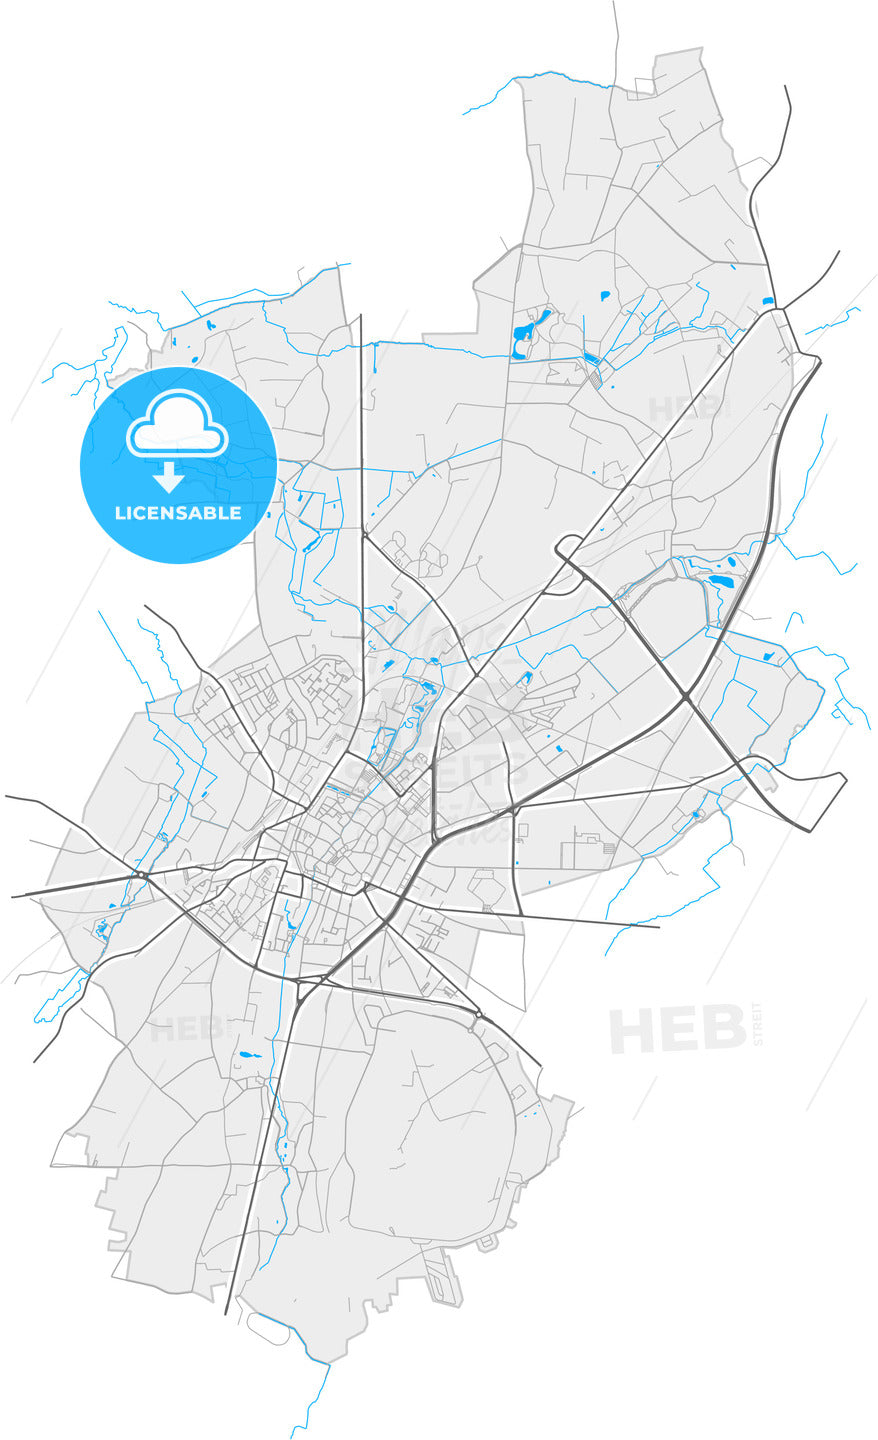 Sint-Truiden, Limburg, Belgium, high quality vector map